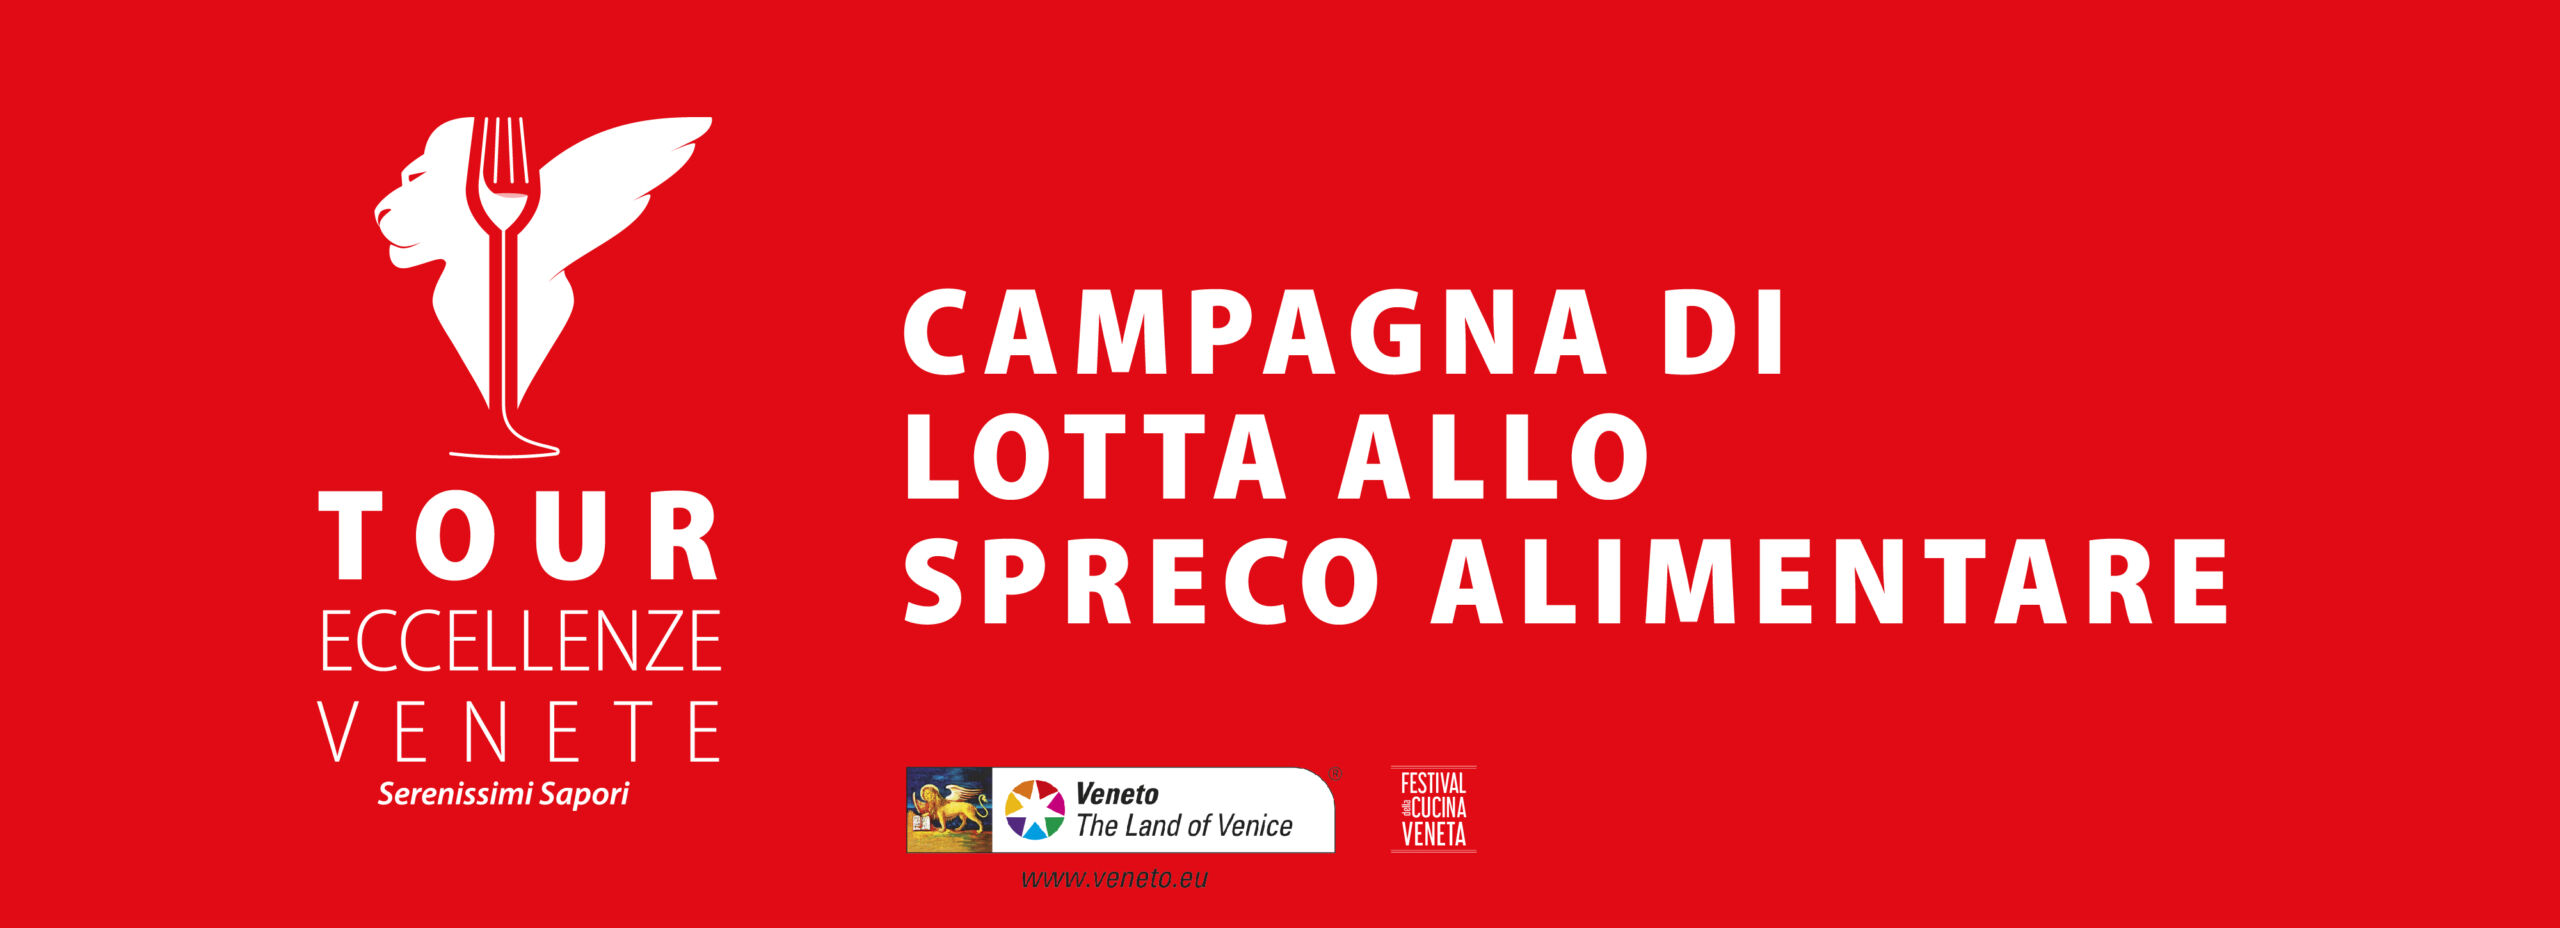 CAMPAGNA CONTRO LO SPRECO ALIMENTARE, articolo: Veneto conferma e certezza 2023 per il DOP Economy dell'Italia, immagine da sito